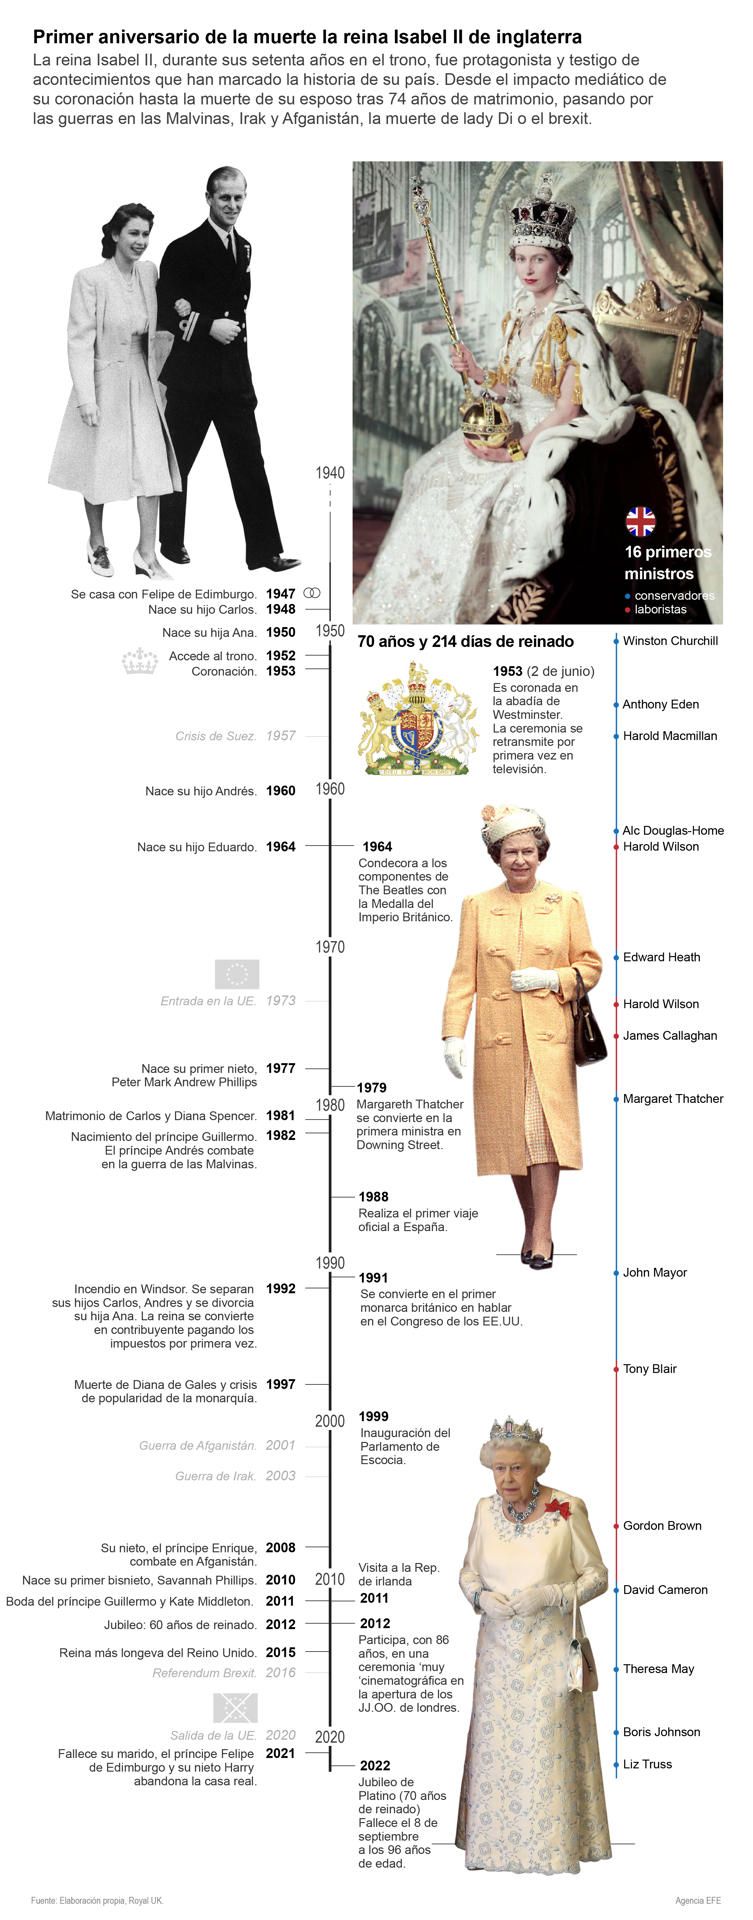 El Reino Unido conmemora el aniversario de la muerte de Isabel II 01 090923